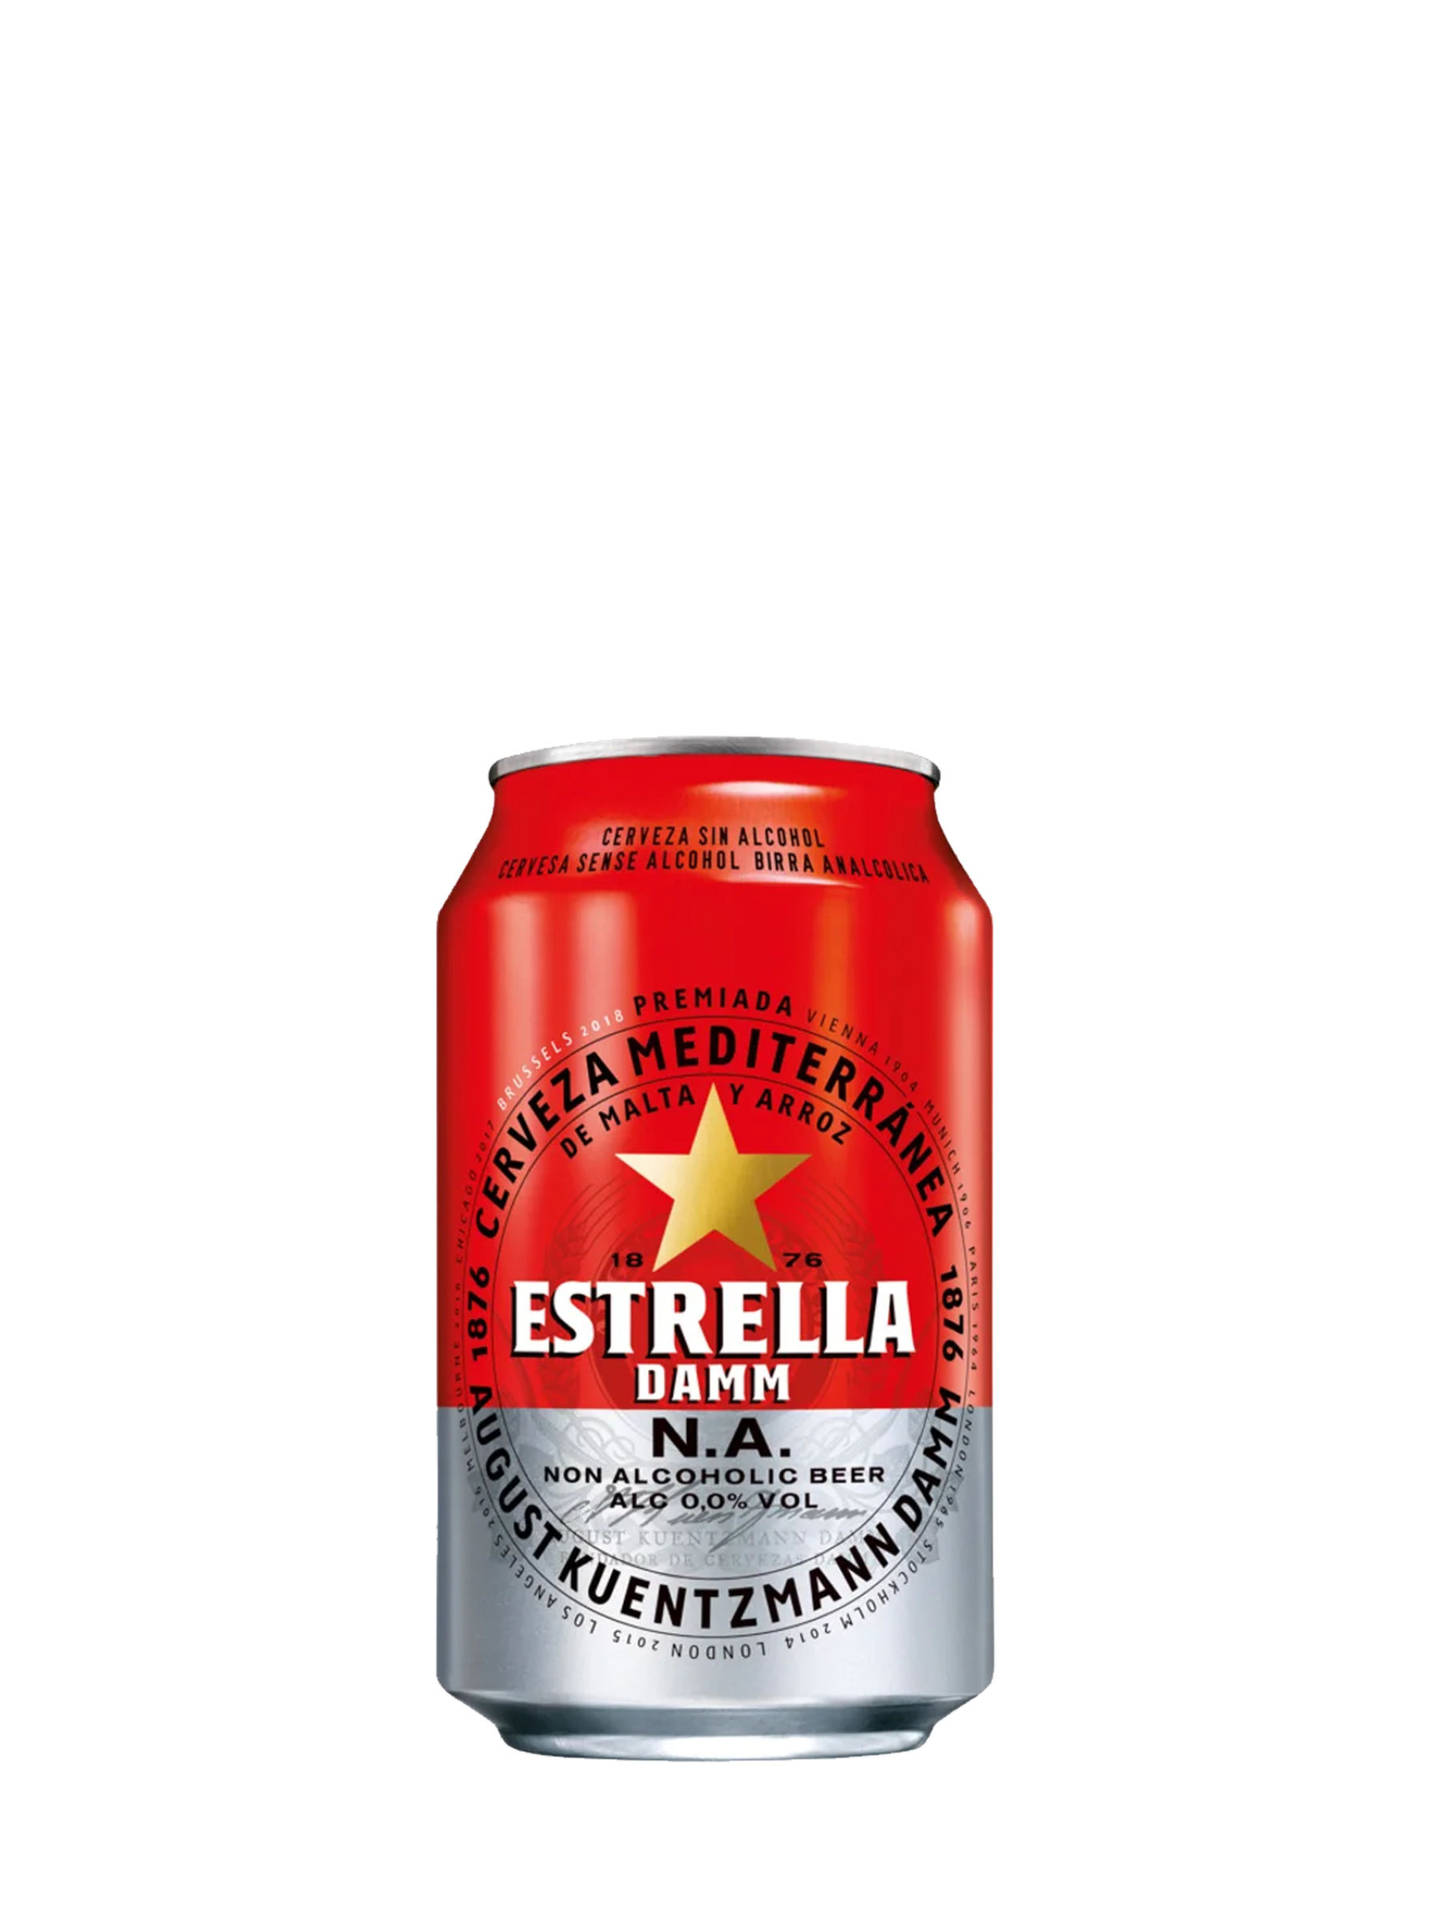 Estrella 1800 X 2400 Wallpaper